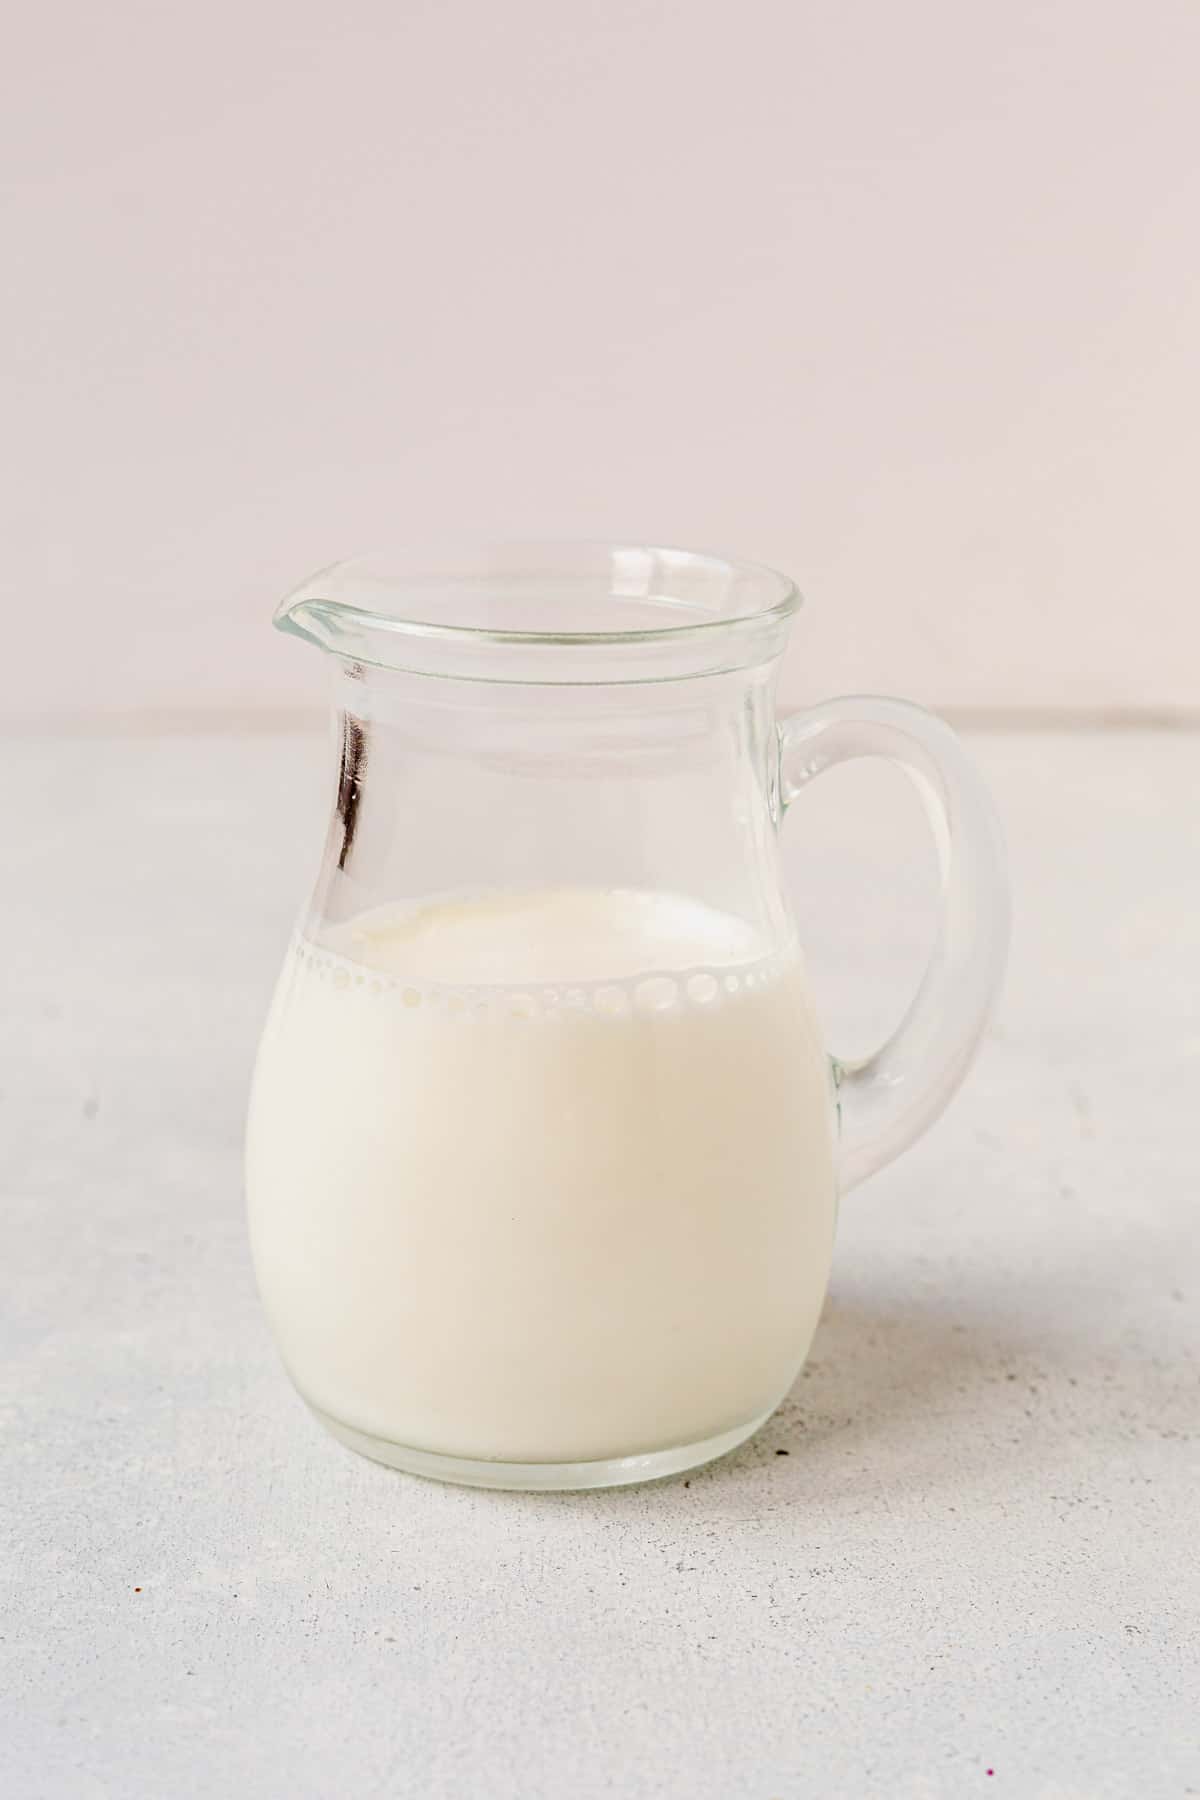 buttermilk in a glass jar